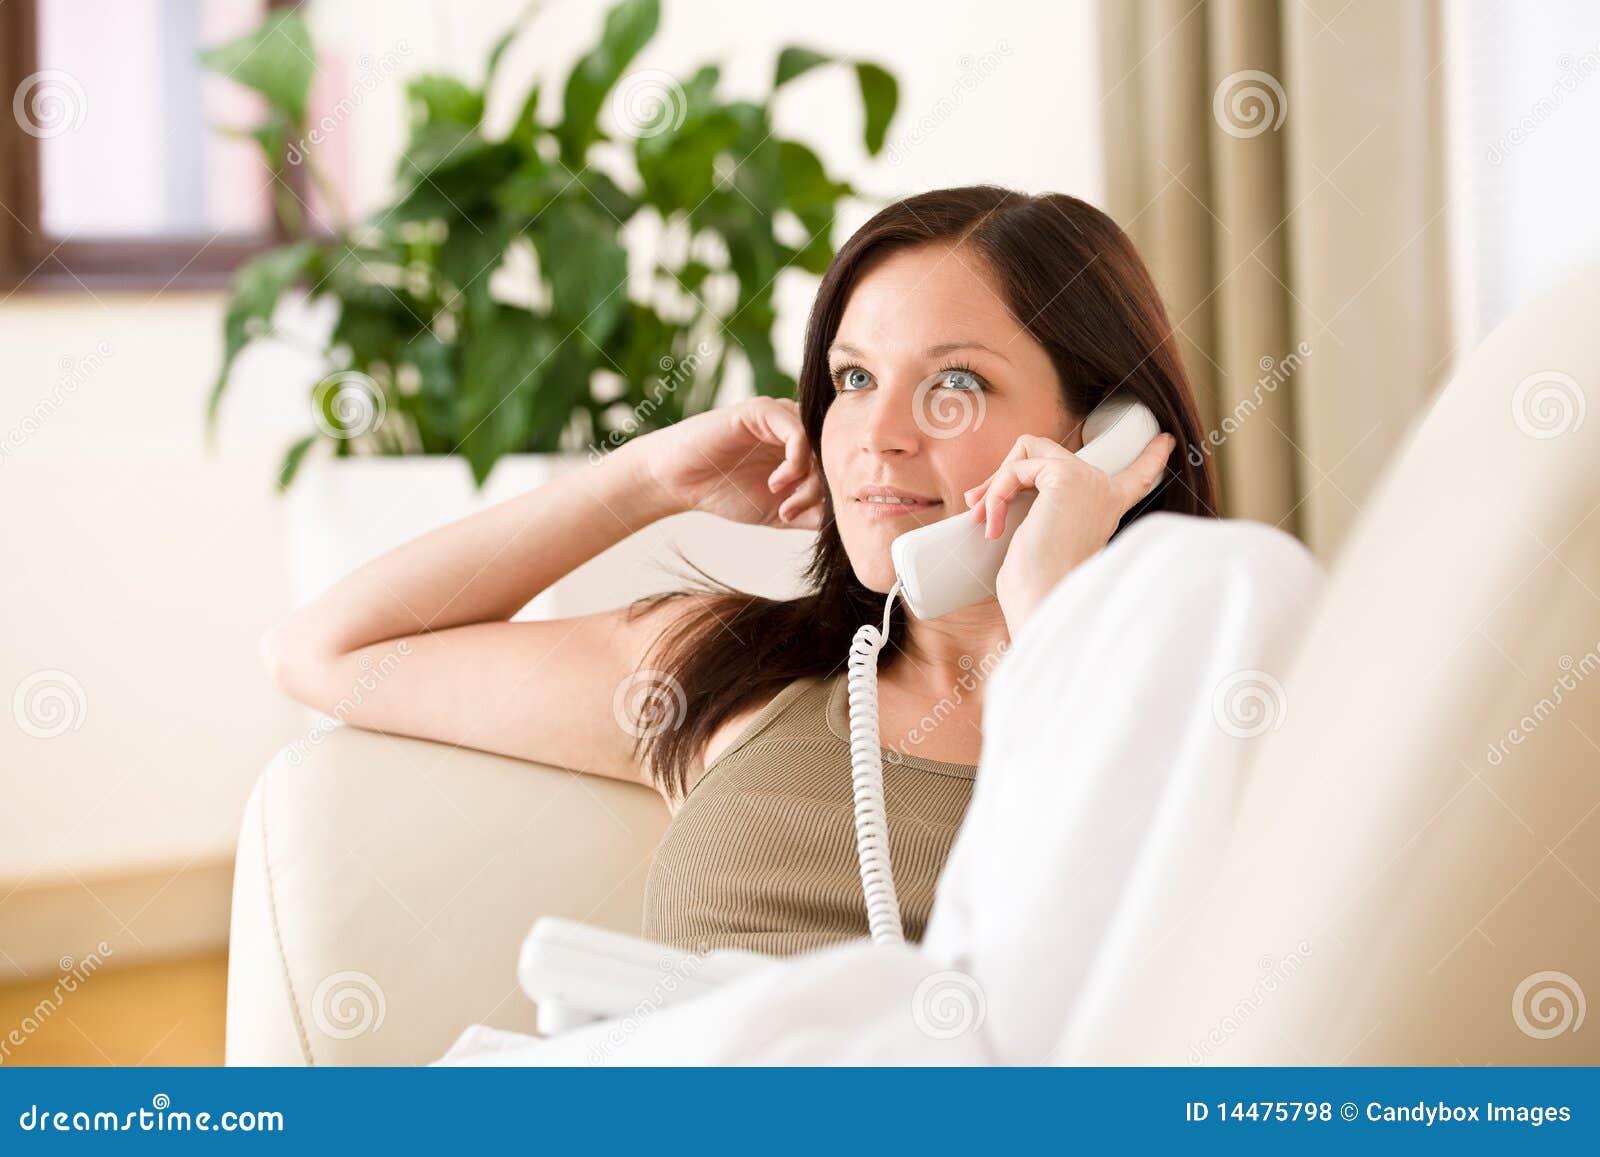 Жена разговаривает по телефону а ее. Взрослая женщина с телефоном. Счастливая женщина с телефоном. Девушка говорит по телефону дома. Девушка говорит по домашнему телефону.